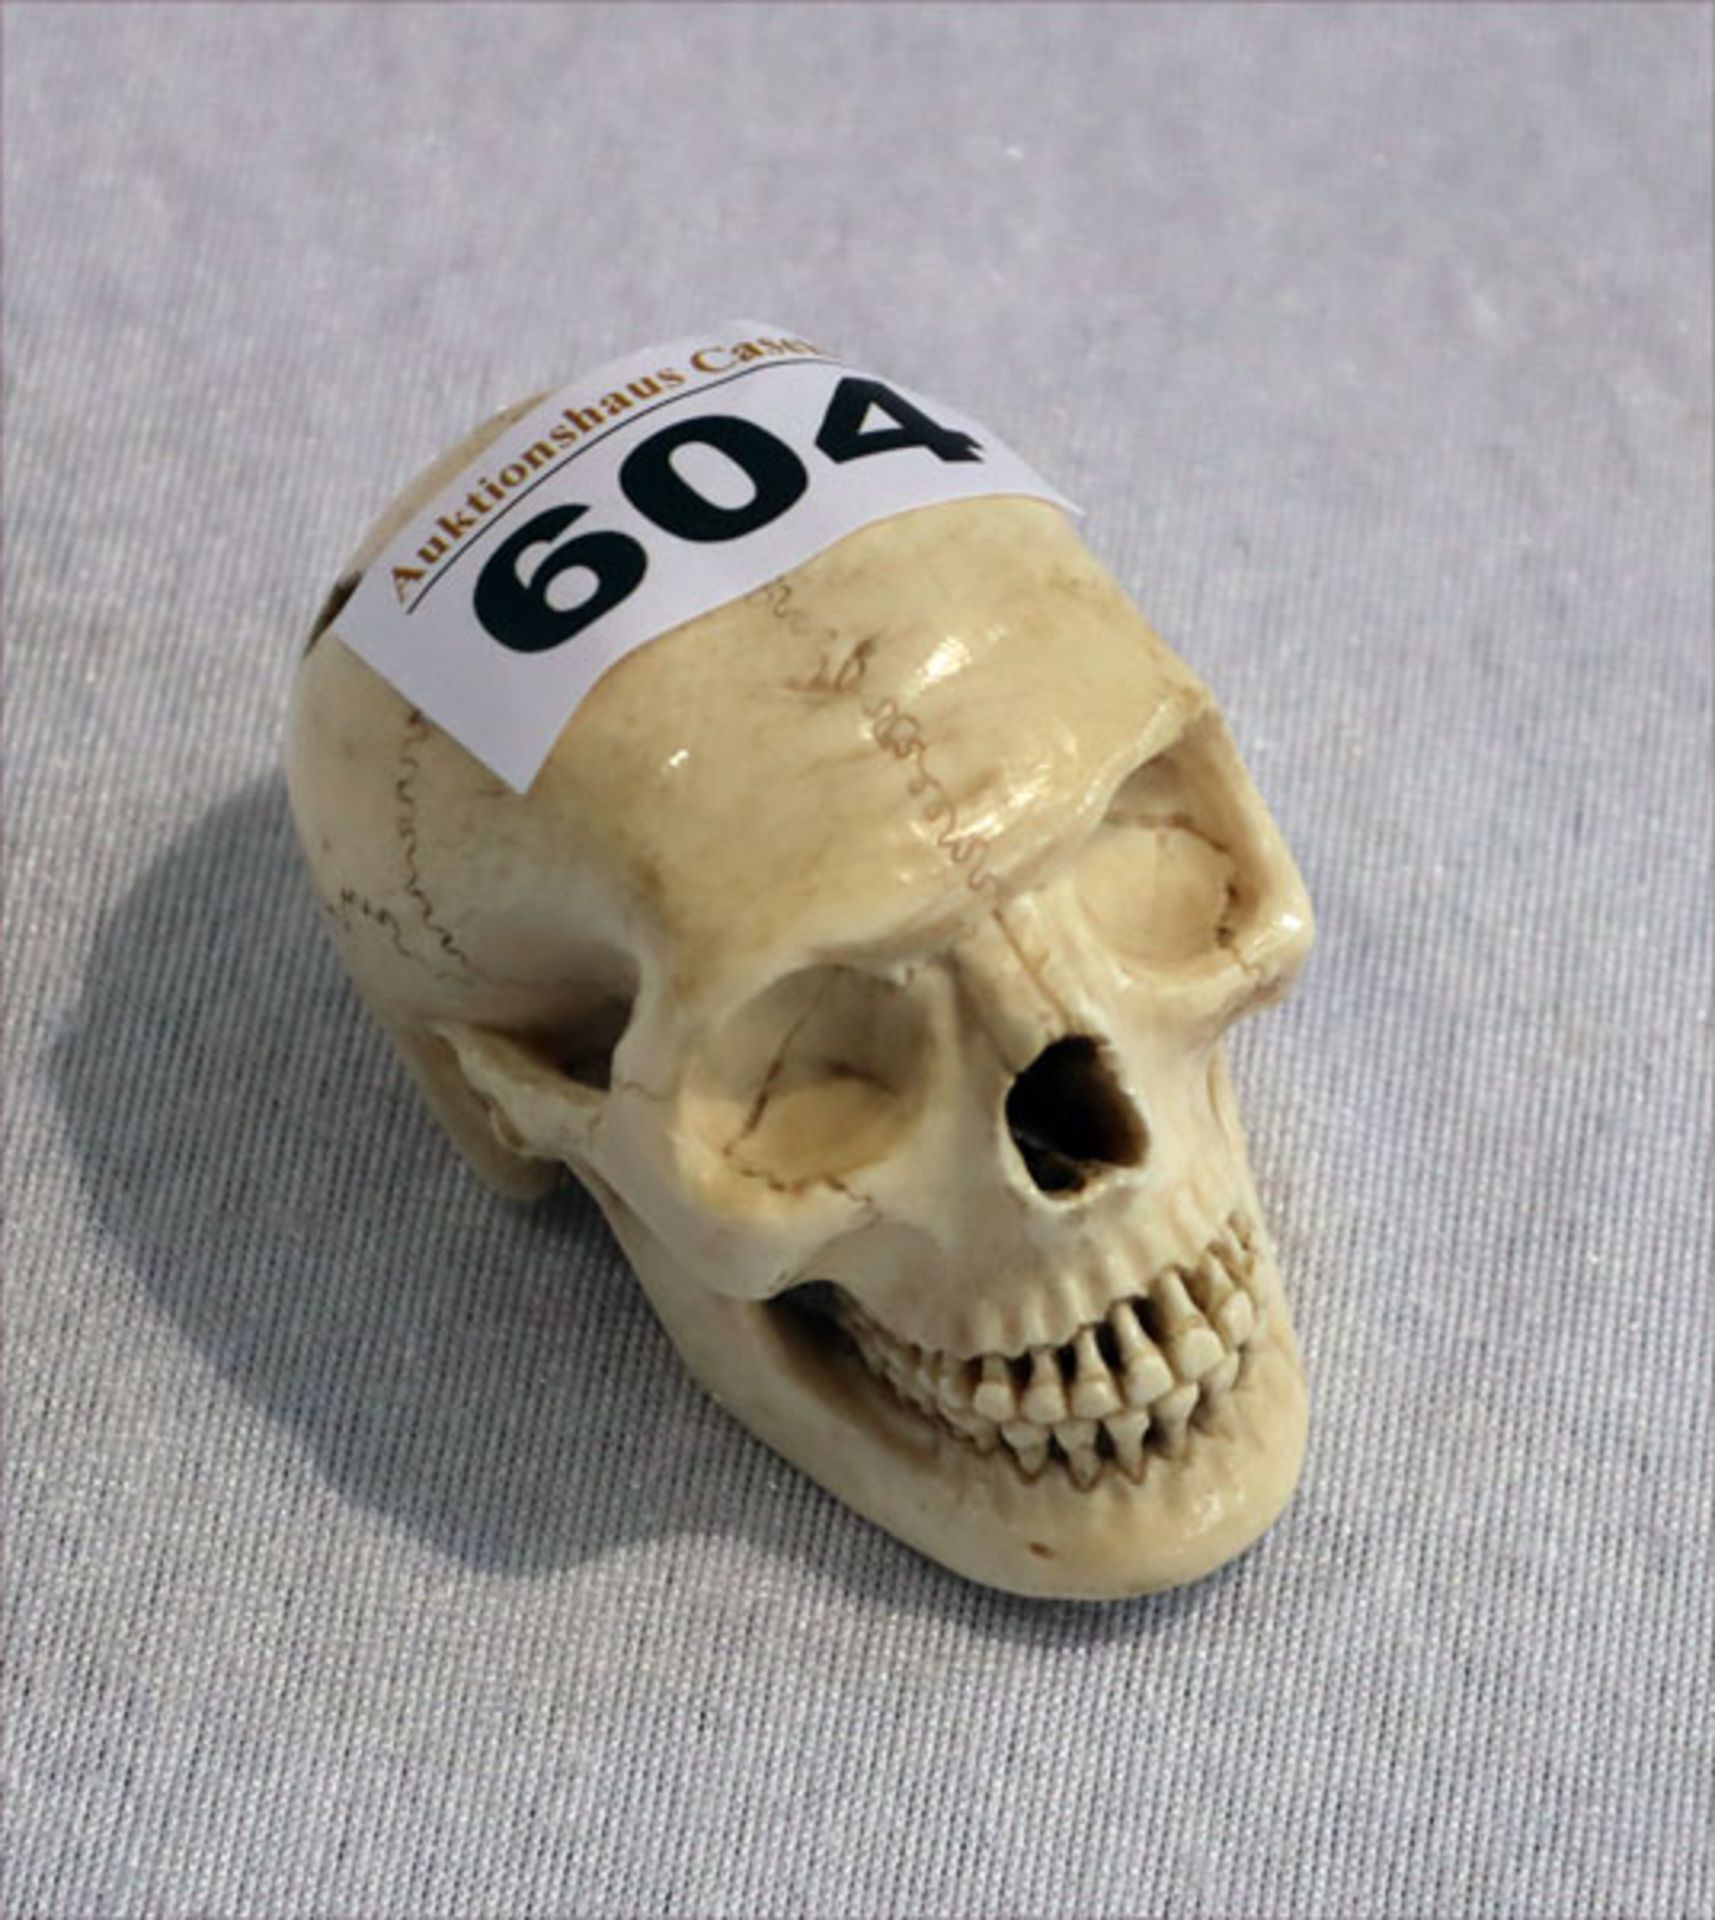 Miniatur eines Totenkopfes, ev. aus Knochen, H 4,5 cm, T 6,5 cm